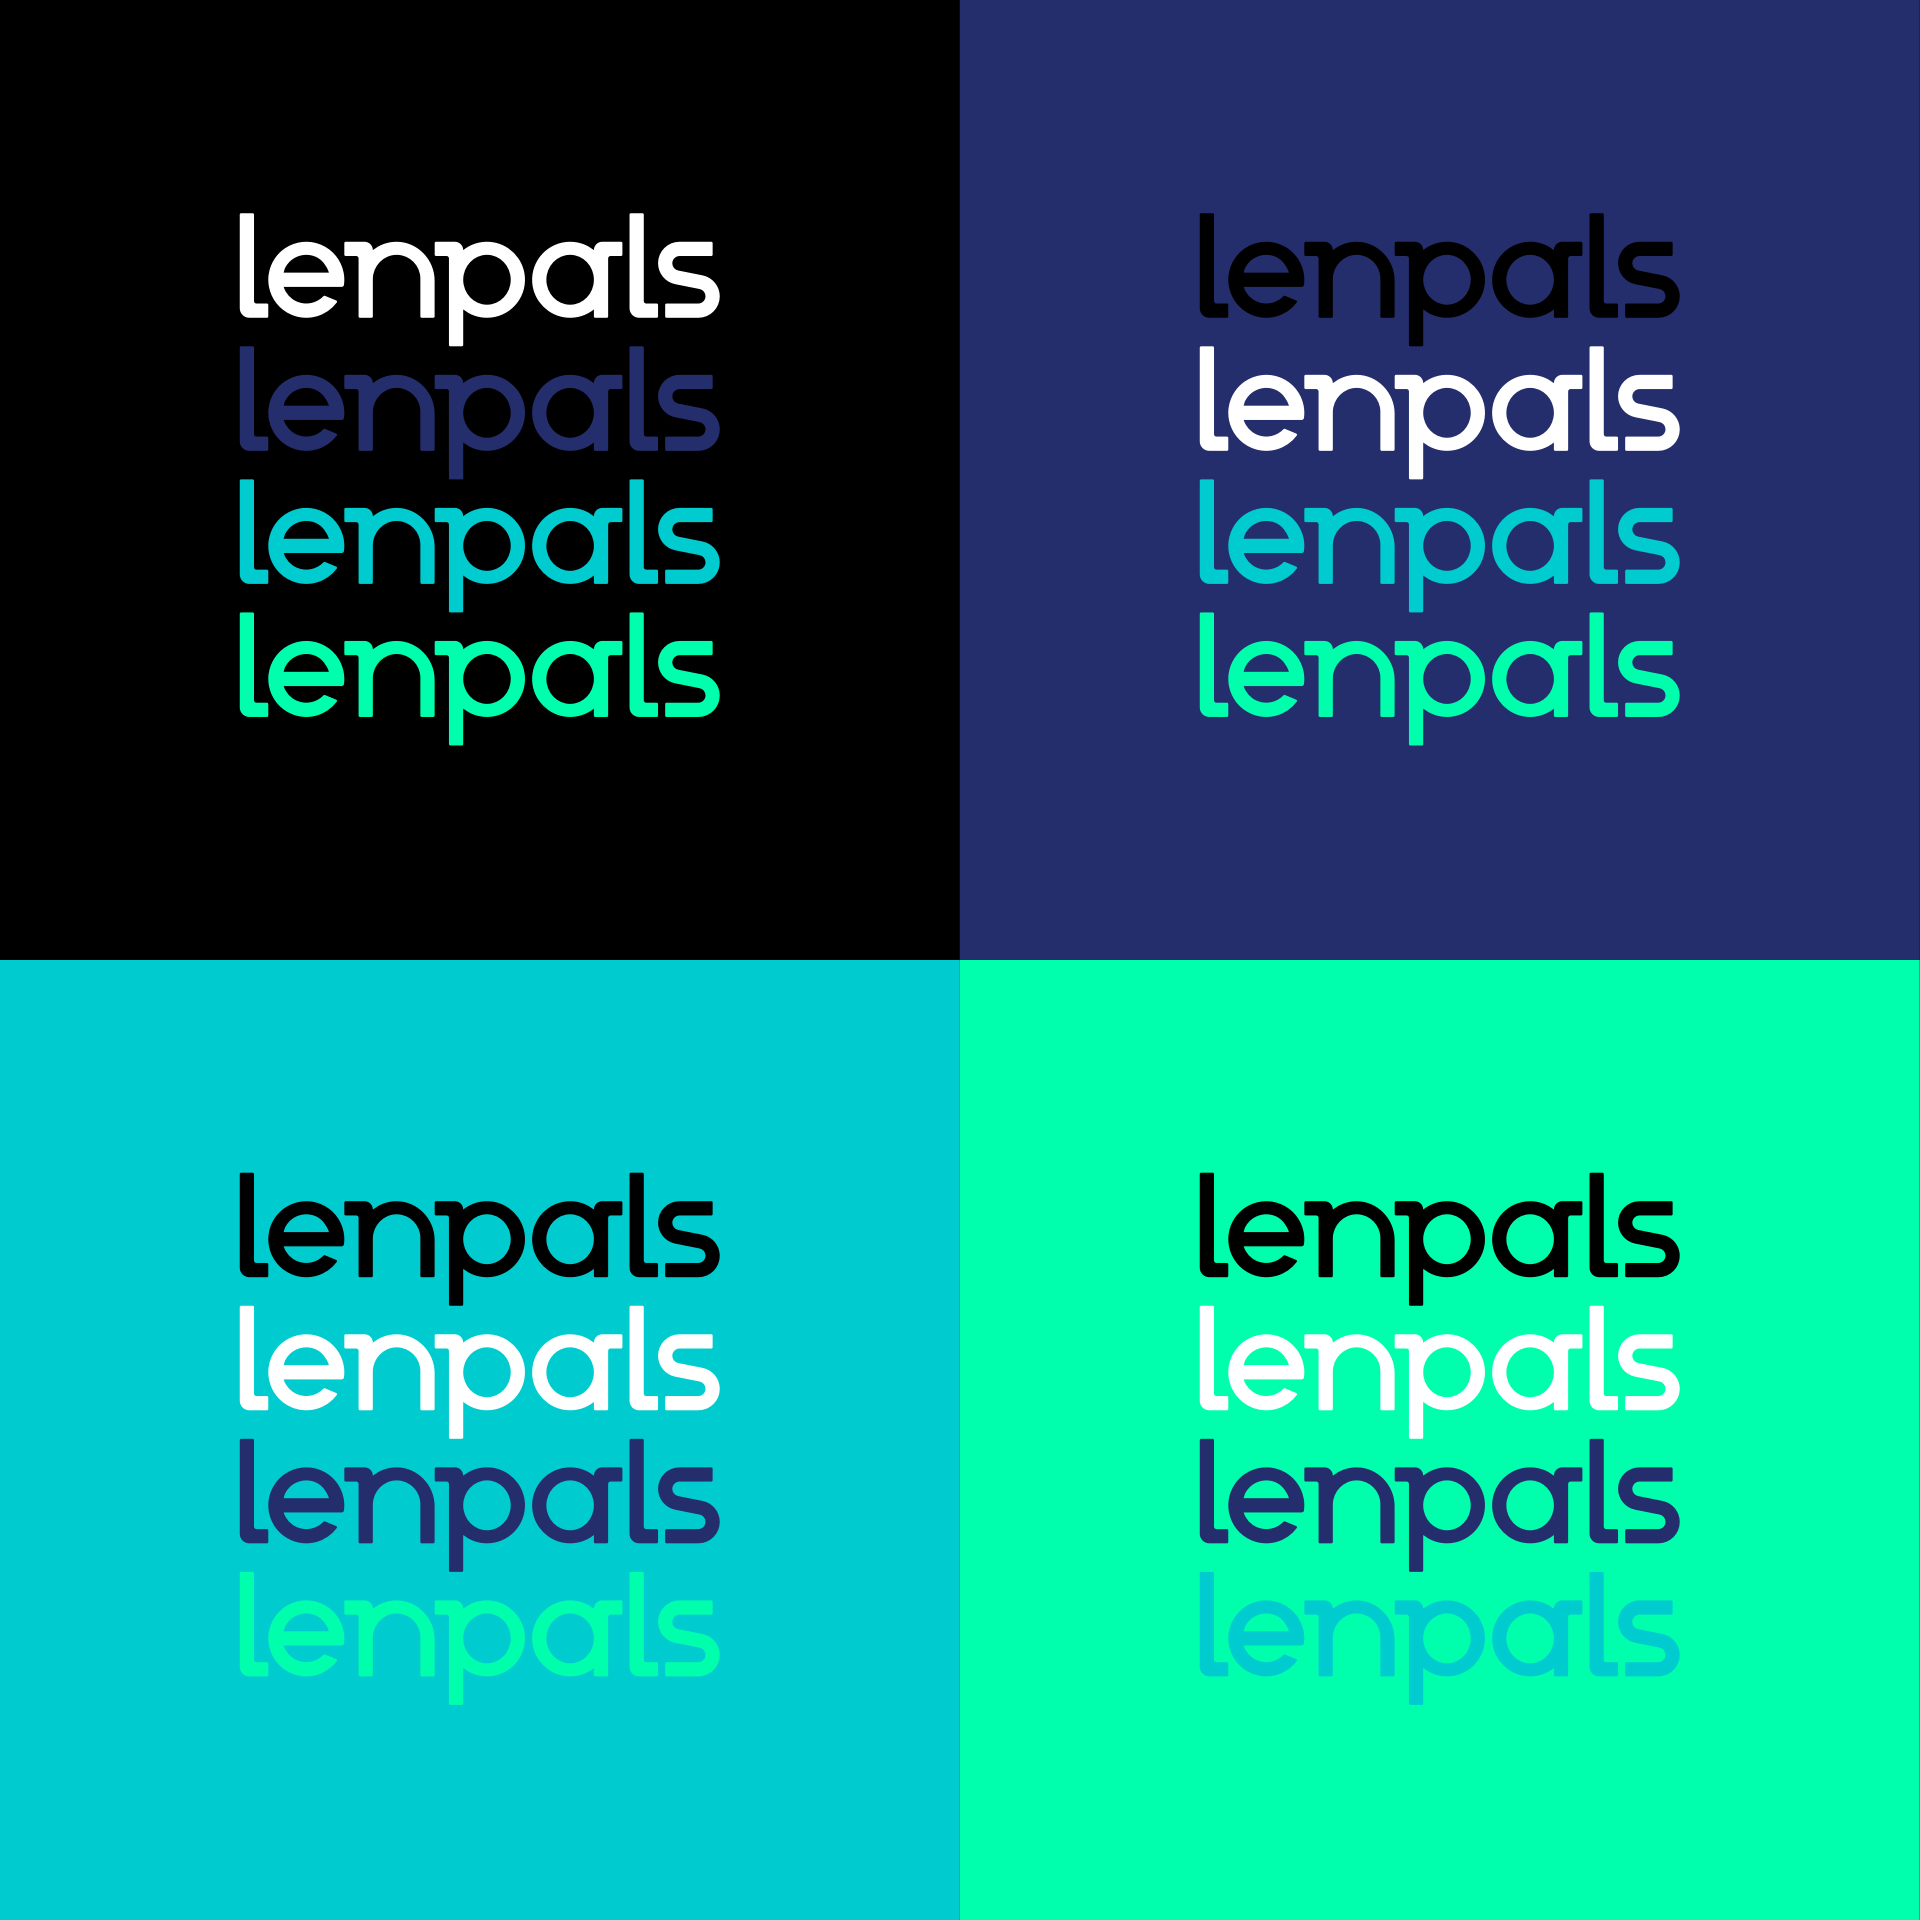 Lenpals_02